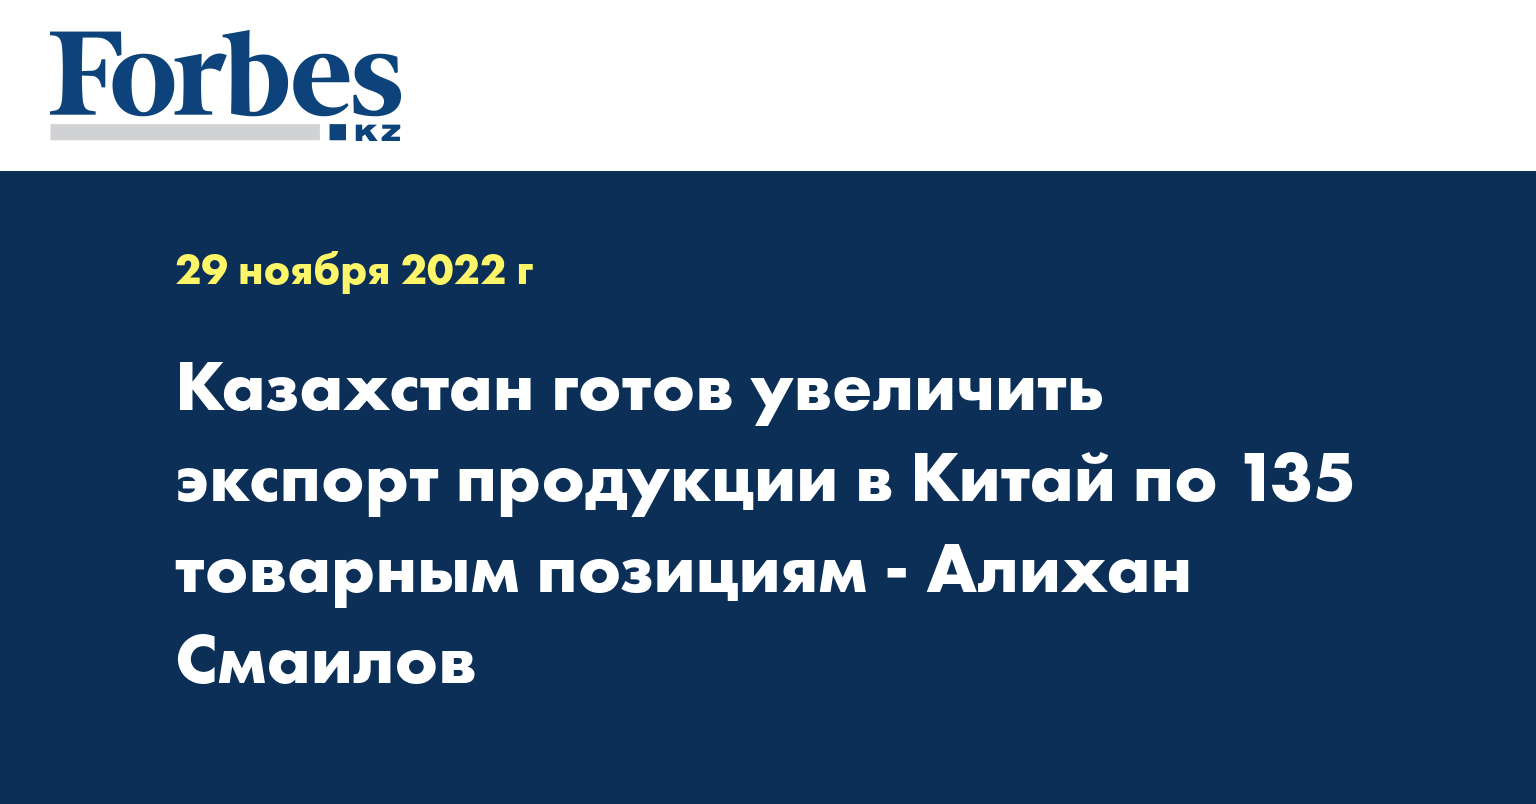 Казахстан готов увеличить экспорт продукции в Китай по 135 товарным позициям - Алихан Смаилов